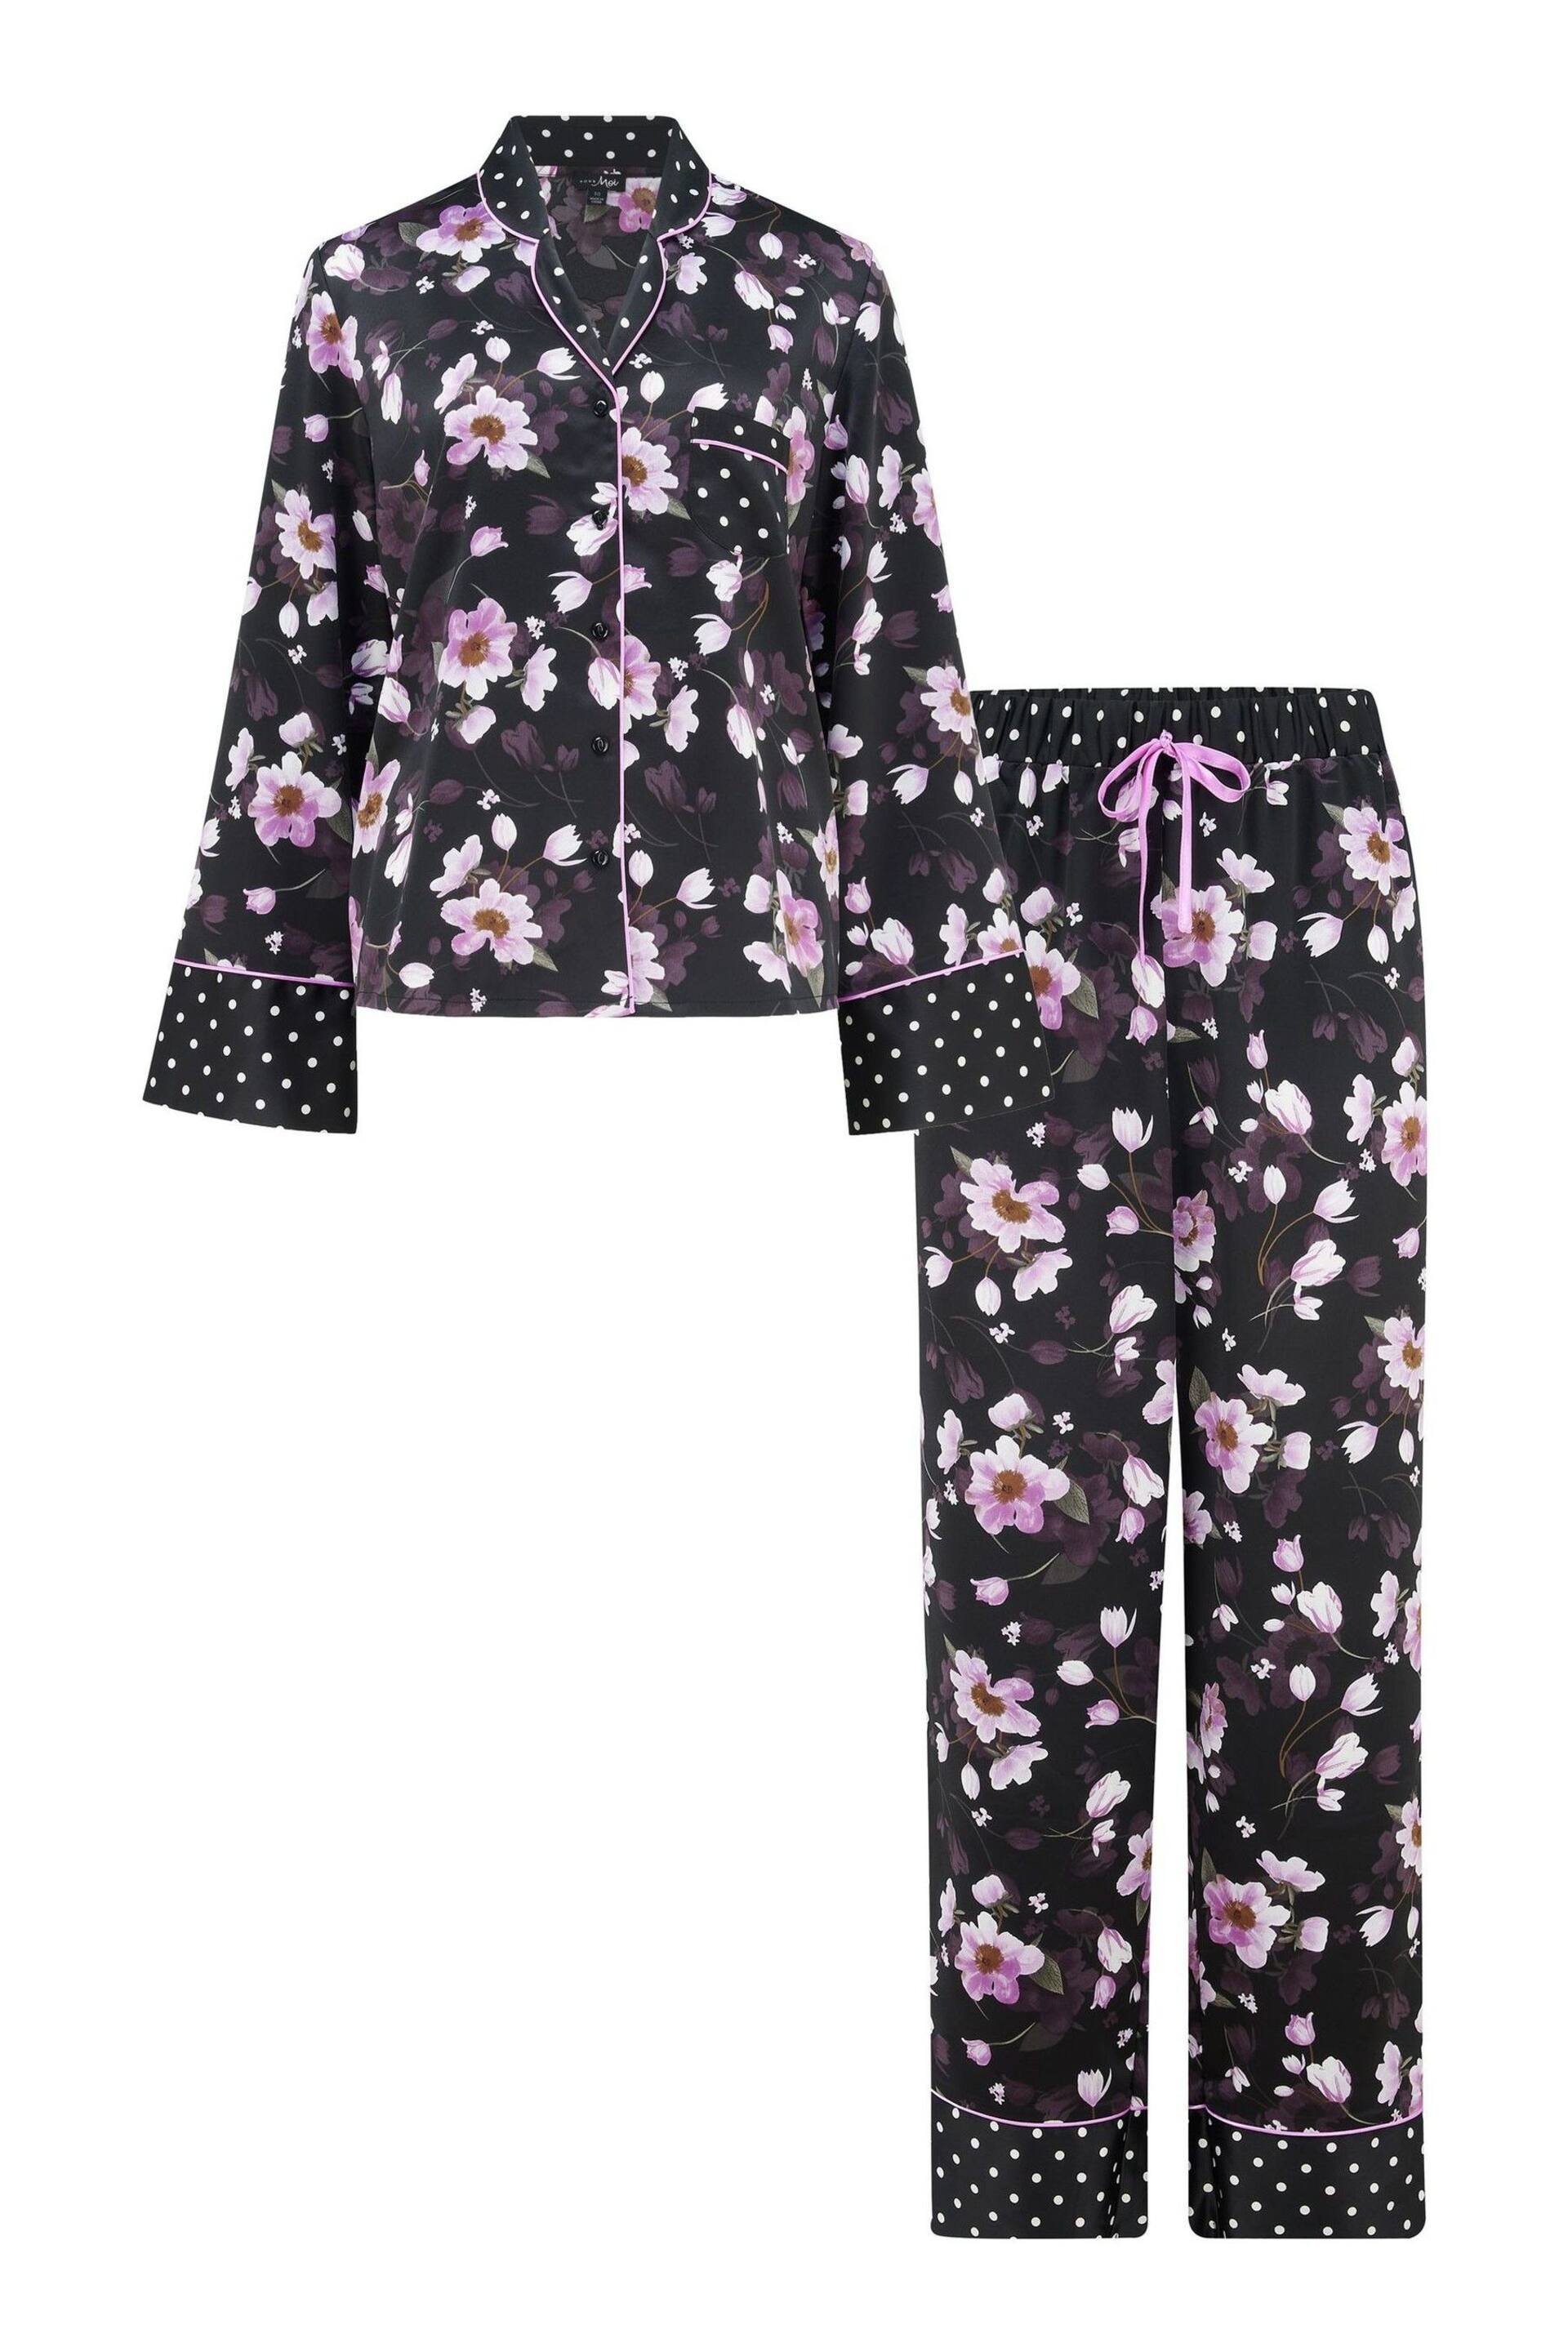 Pour Moi Black Luxe Satin Print Mix Revere Collar Pyjama Set - Image 4 of 5